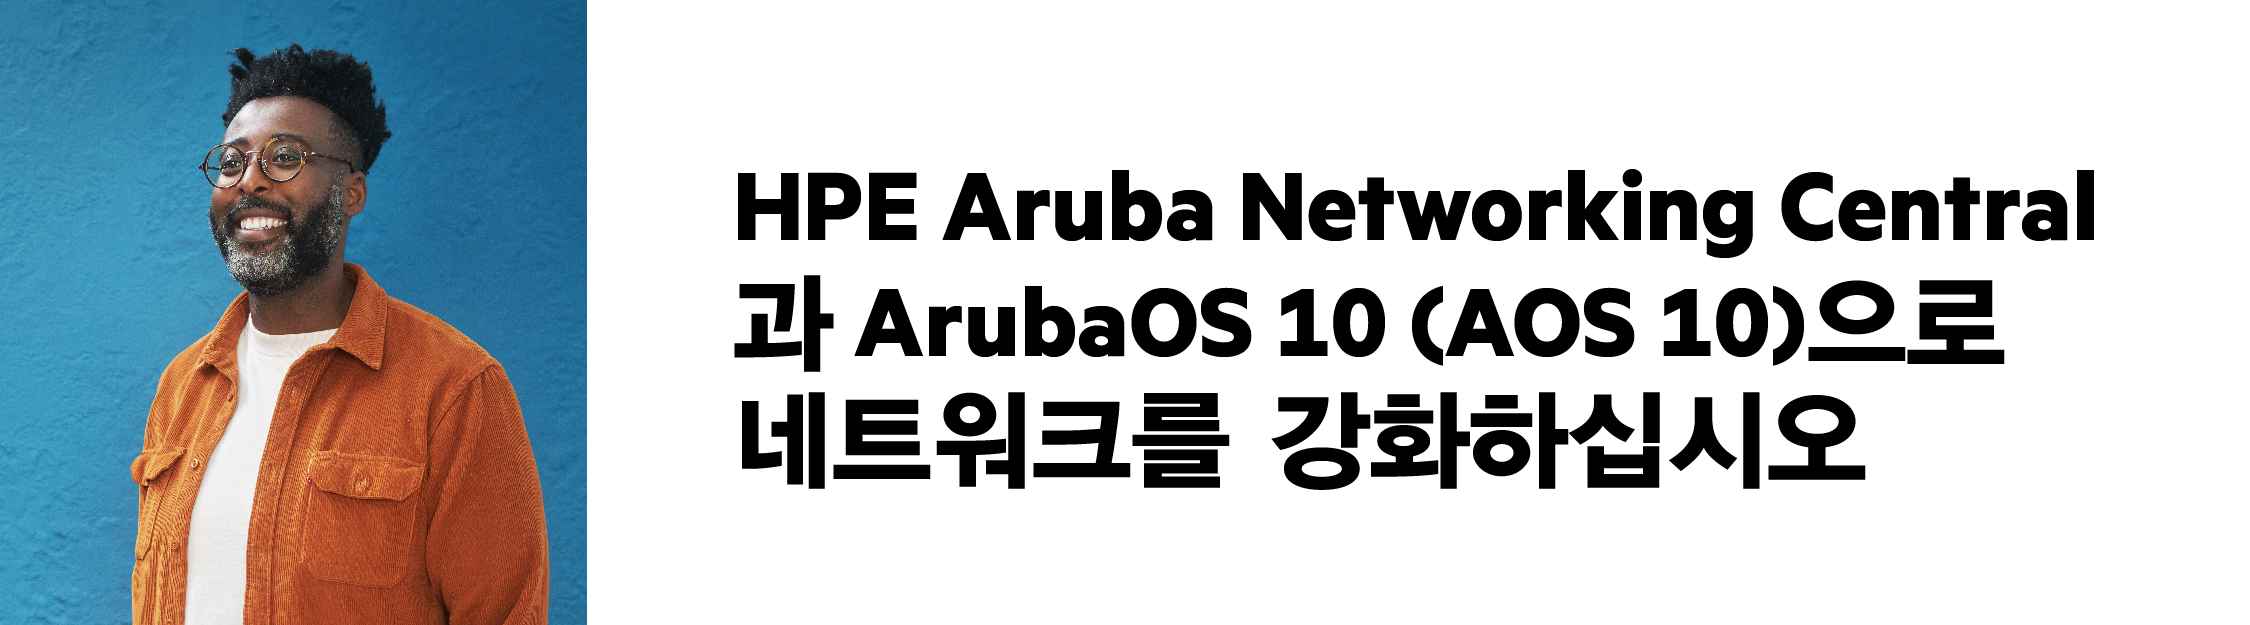 웨비나: HPE Aruba Networking Central, ArubaOS 10을 만나다